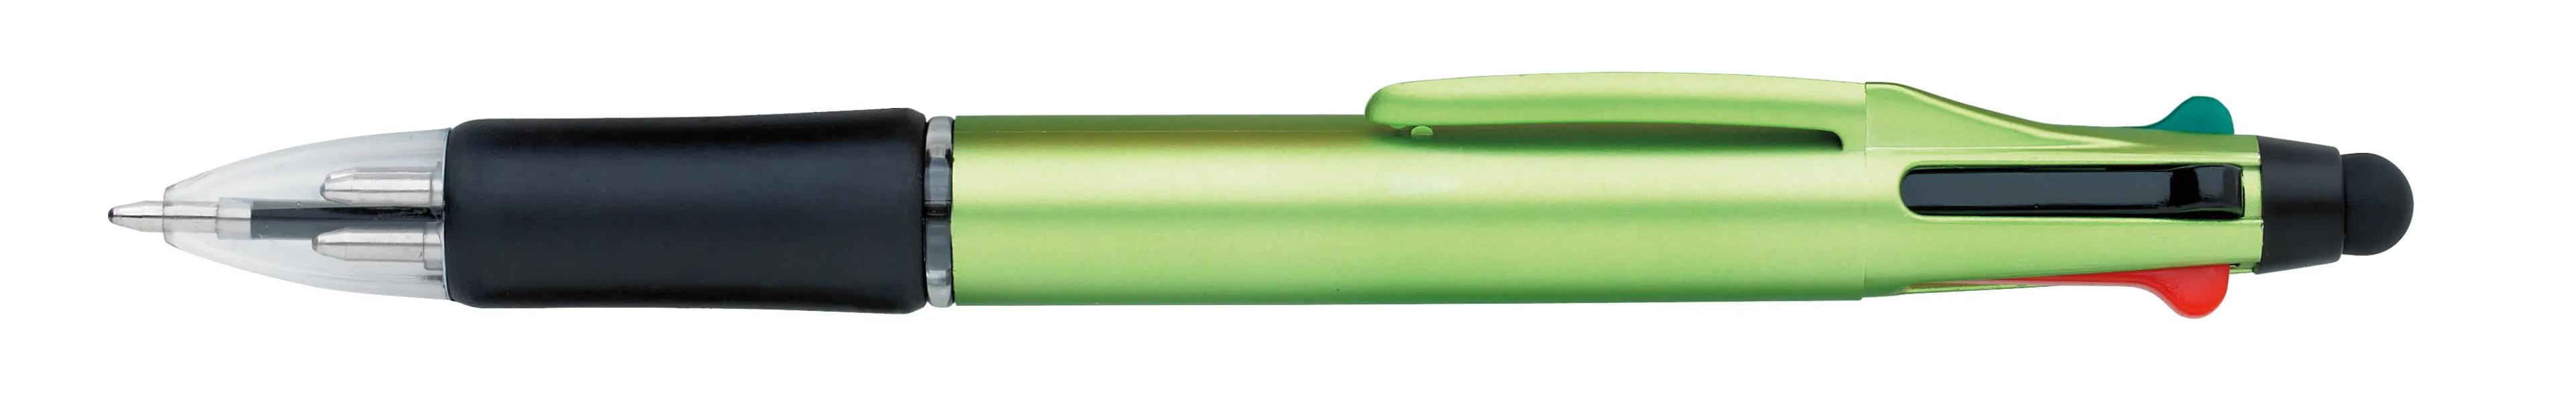 Orbitor Metallic Stylus Pen 5 of 56